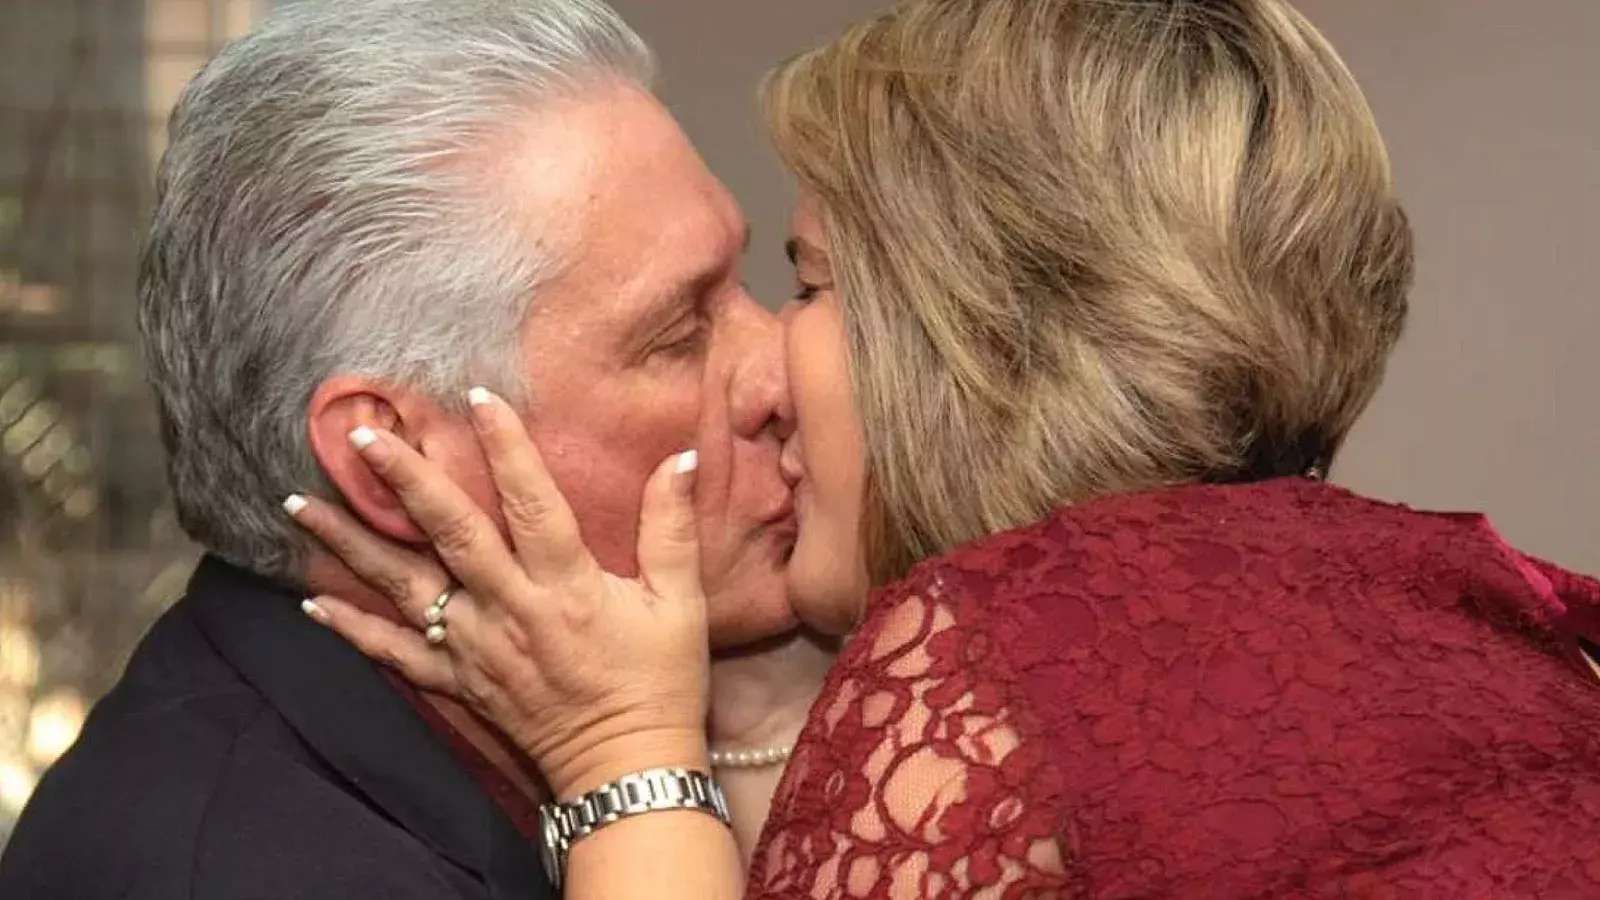 El beso apretujado de Díaz-Canel y Liz Cuesta explota las redes sociales